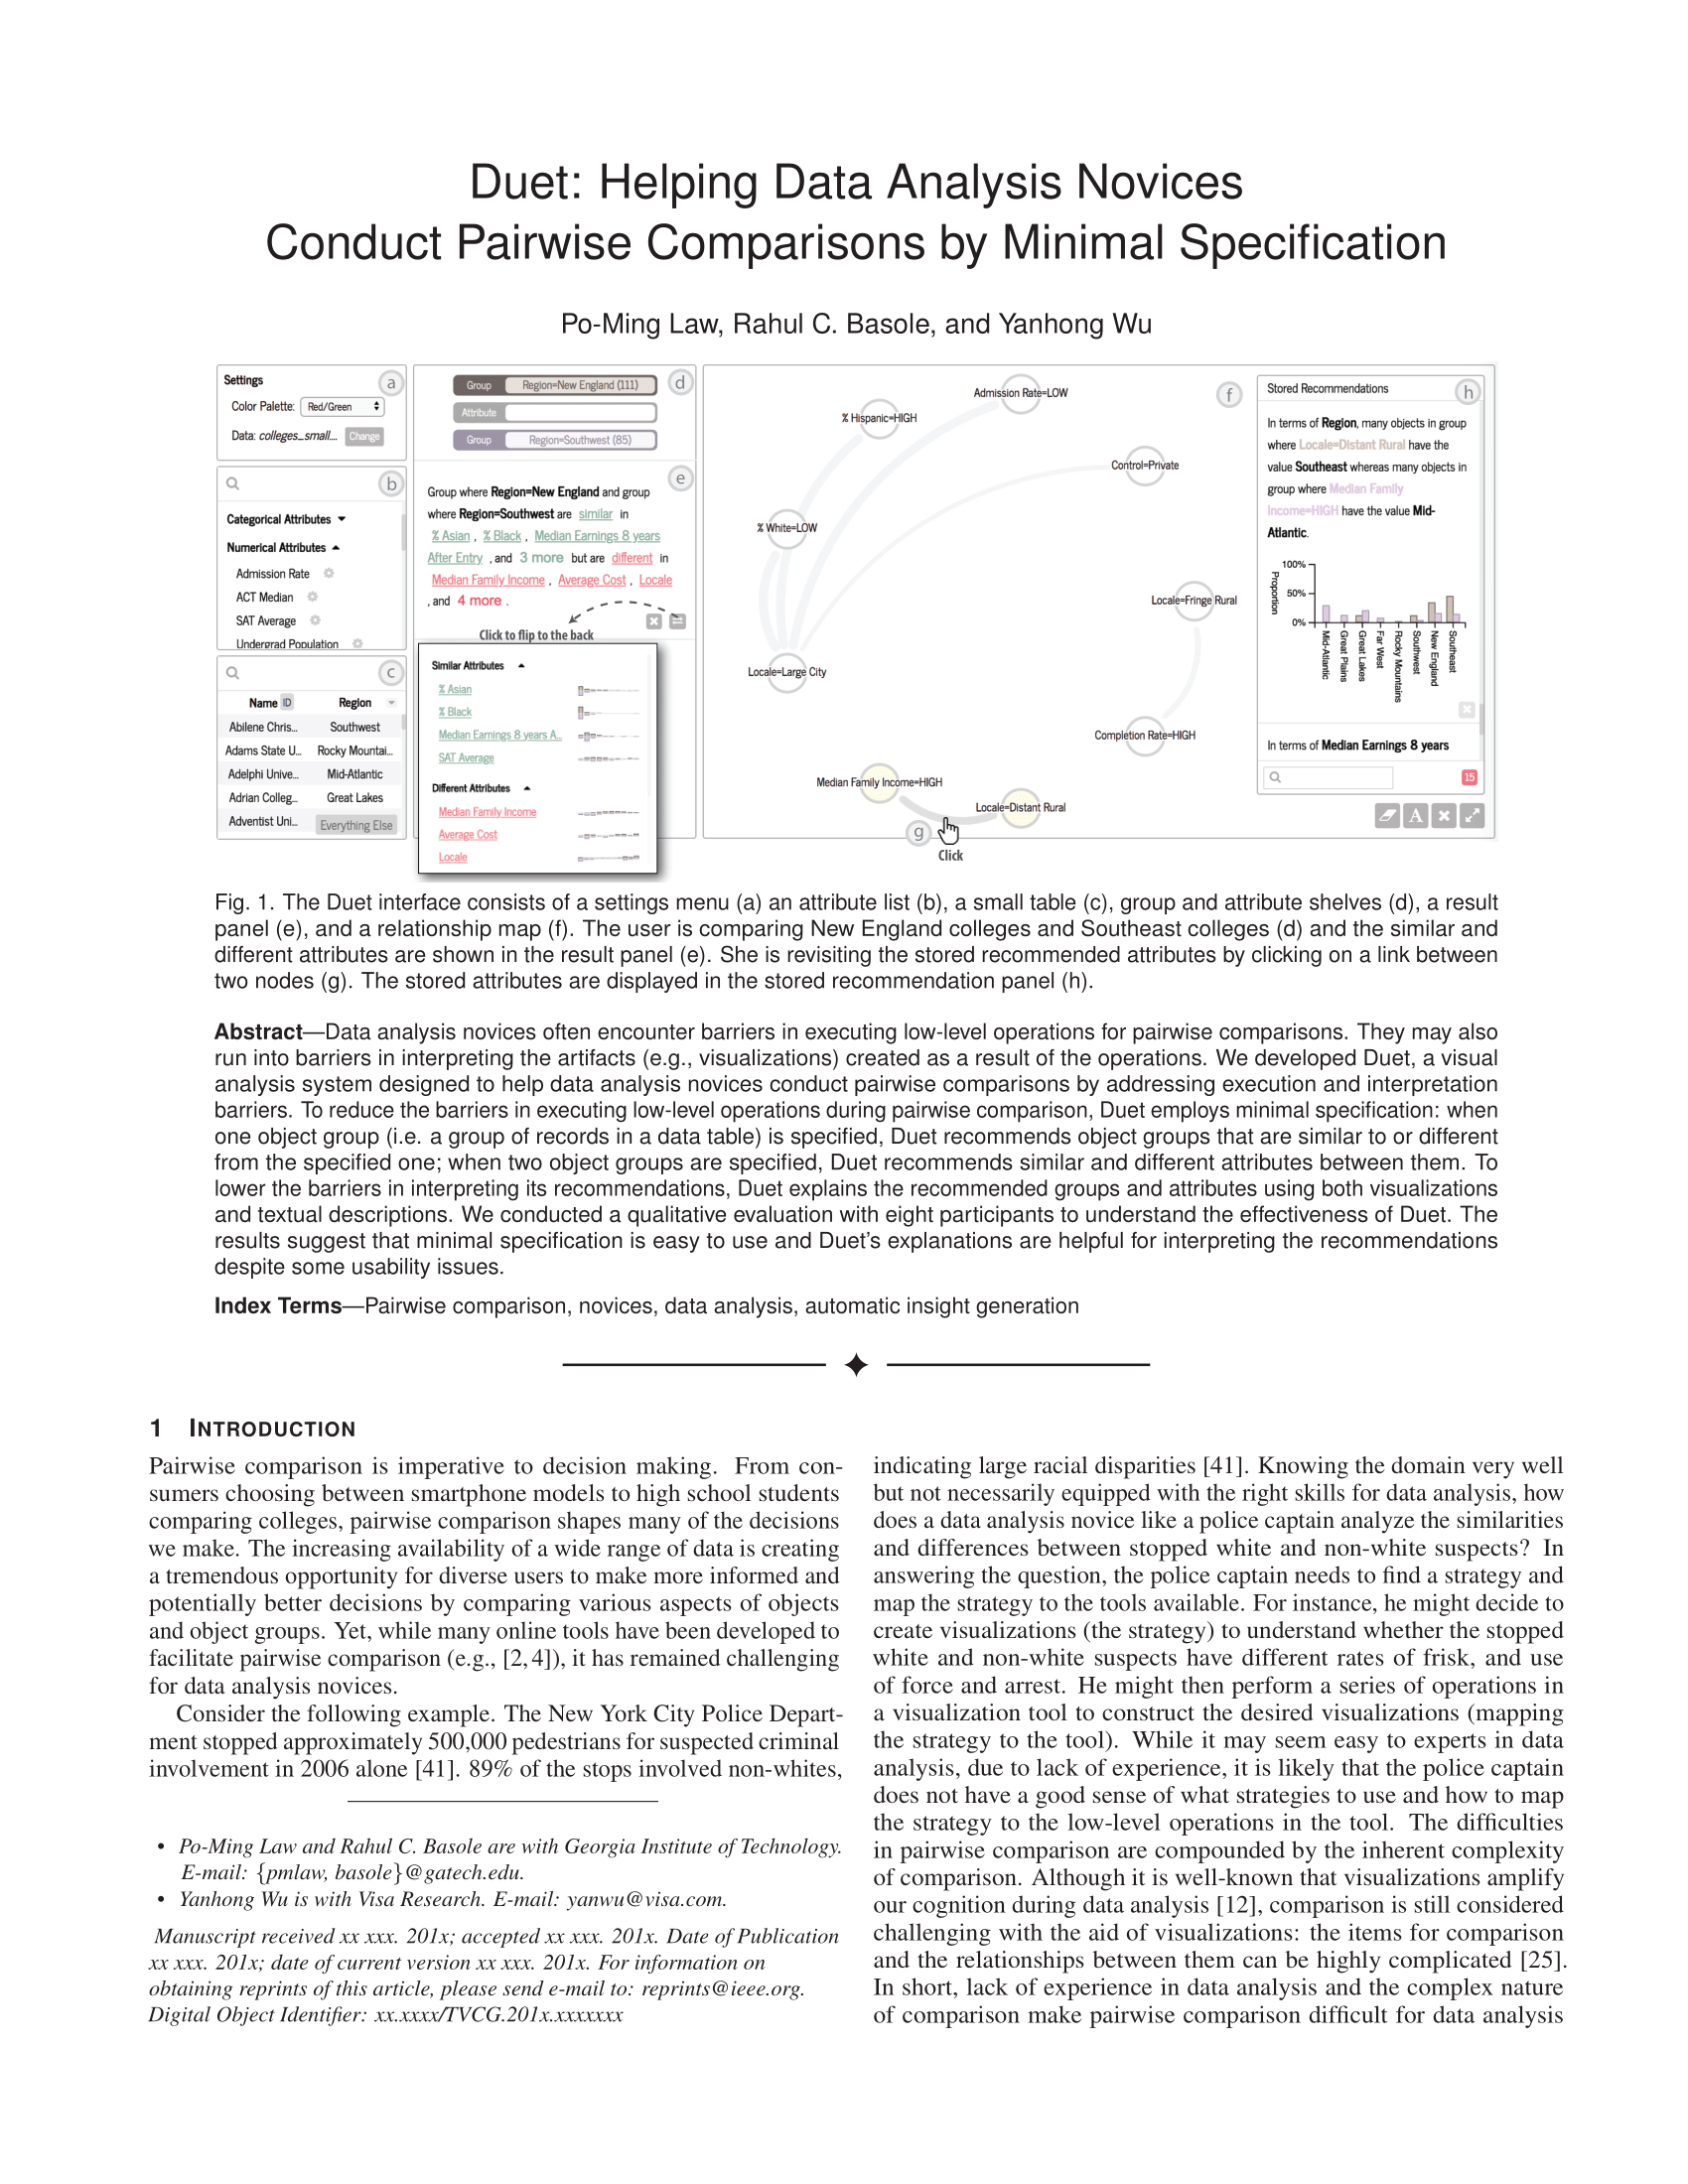 IEEE VIS 2018 Duet paper